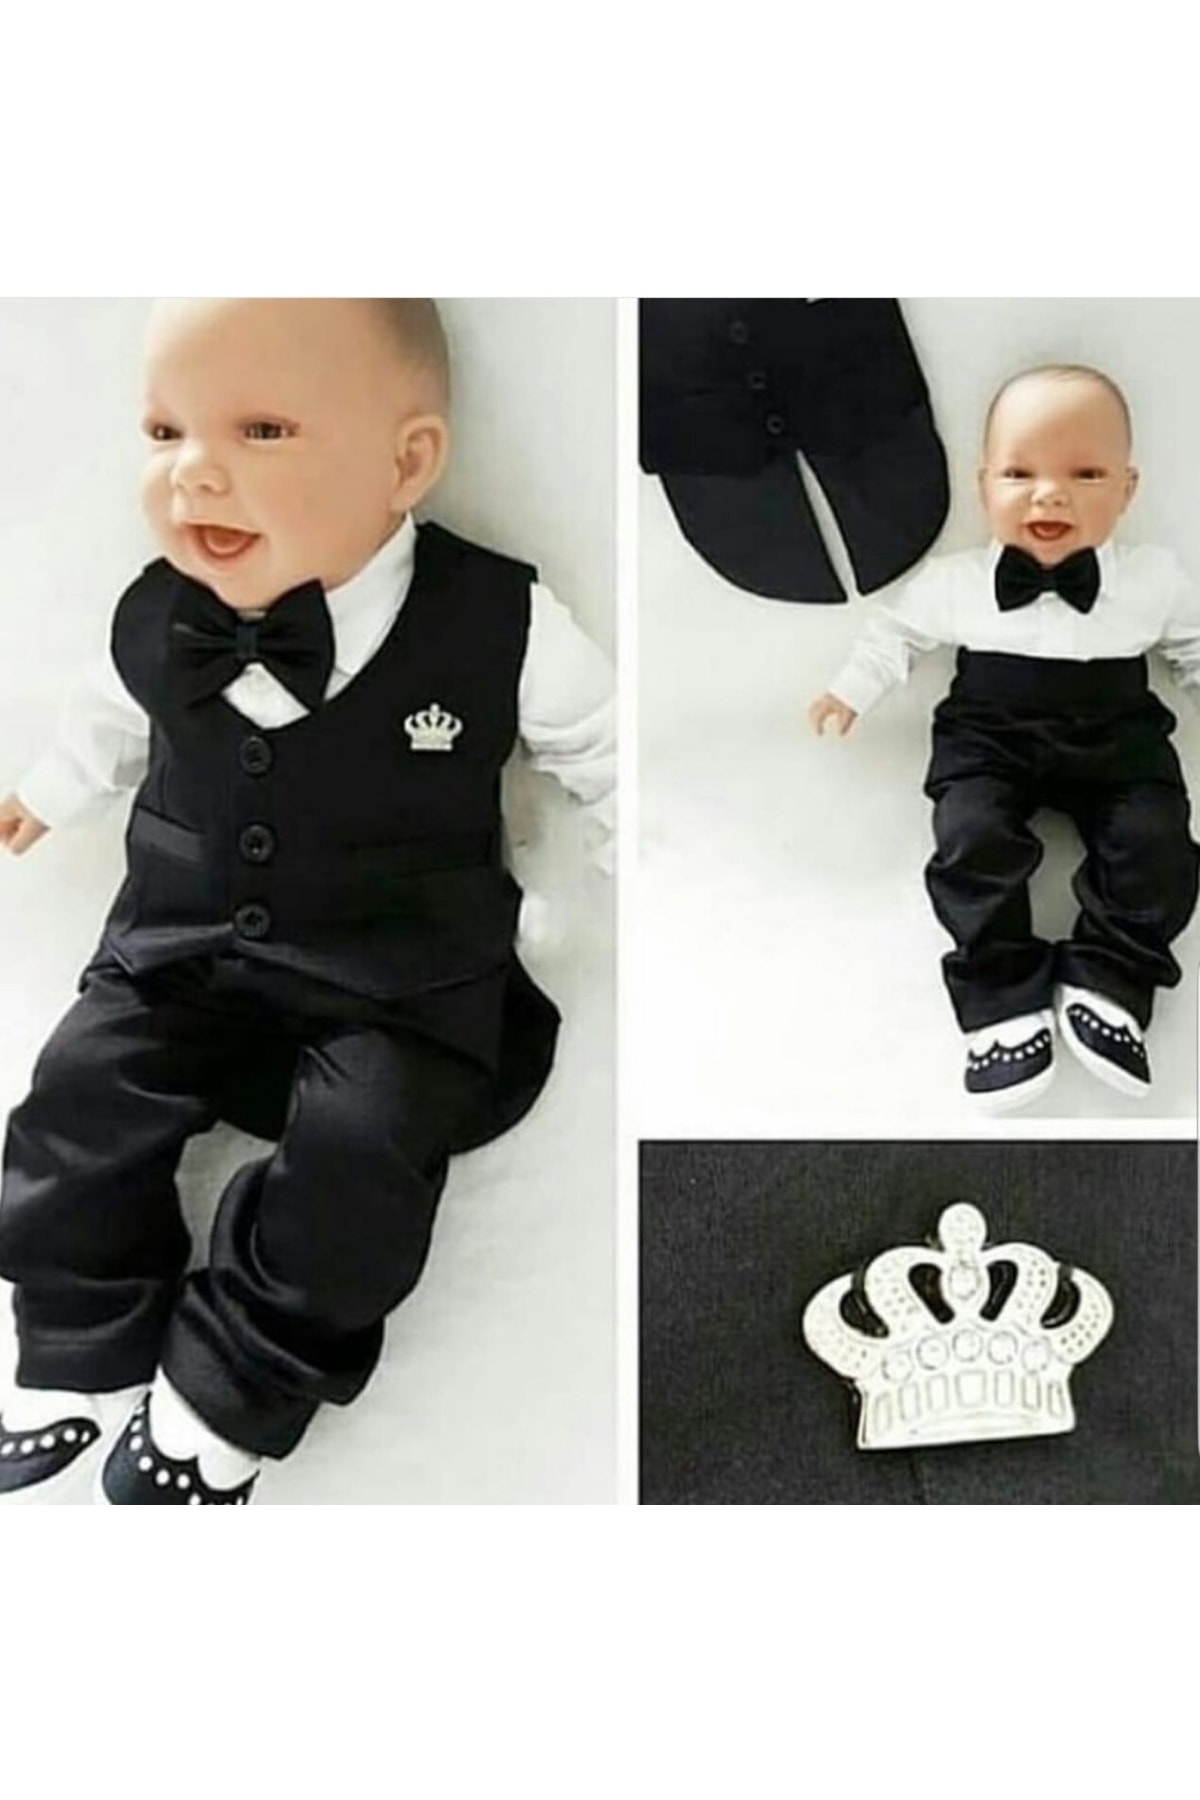 CFR Pugi Erkek Bebek Lüx Smokin Yelekli Mevlüt Takımı Seti - Özel Gün Elbisesi